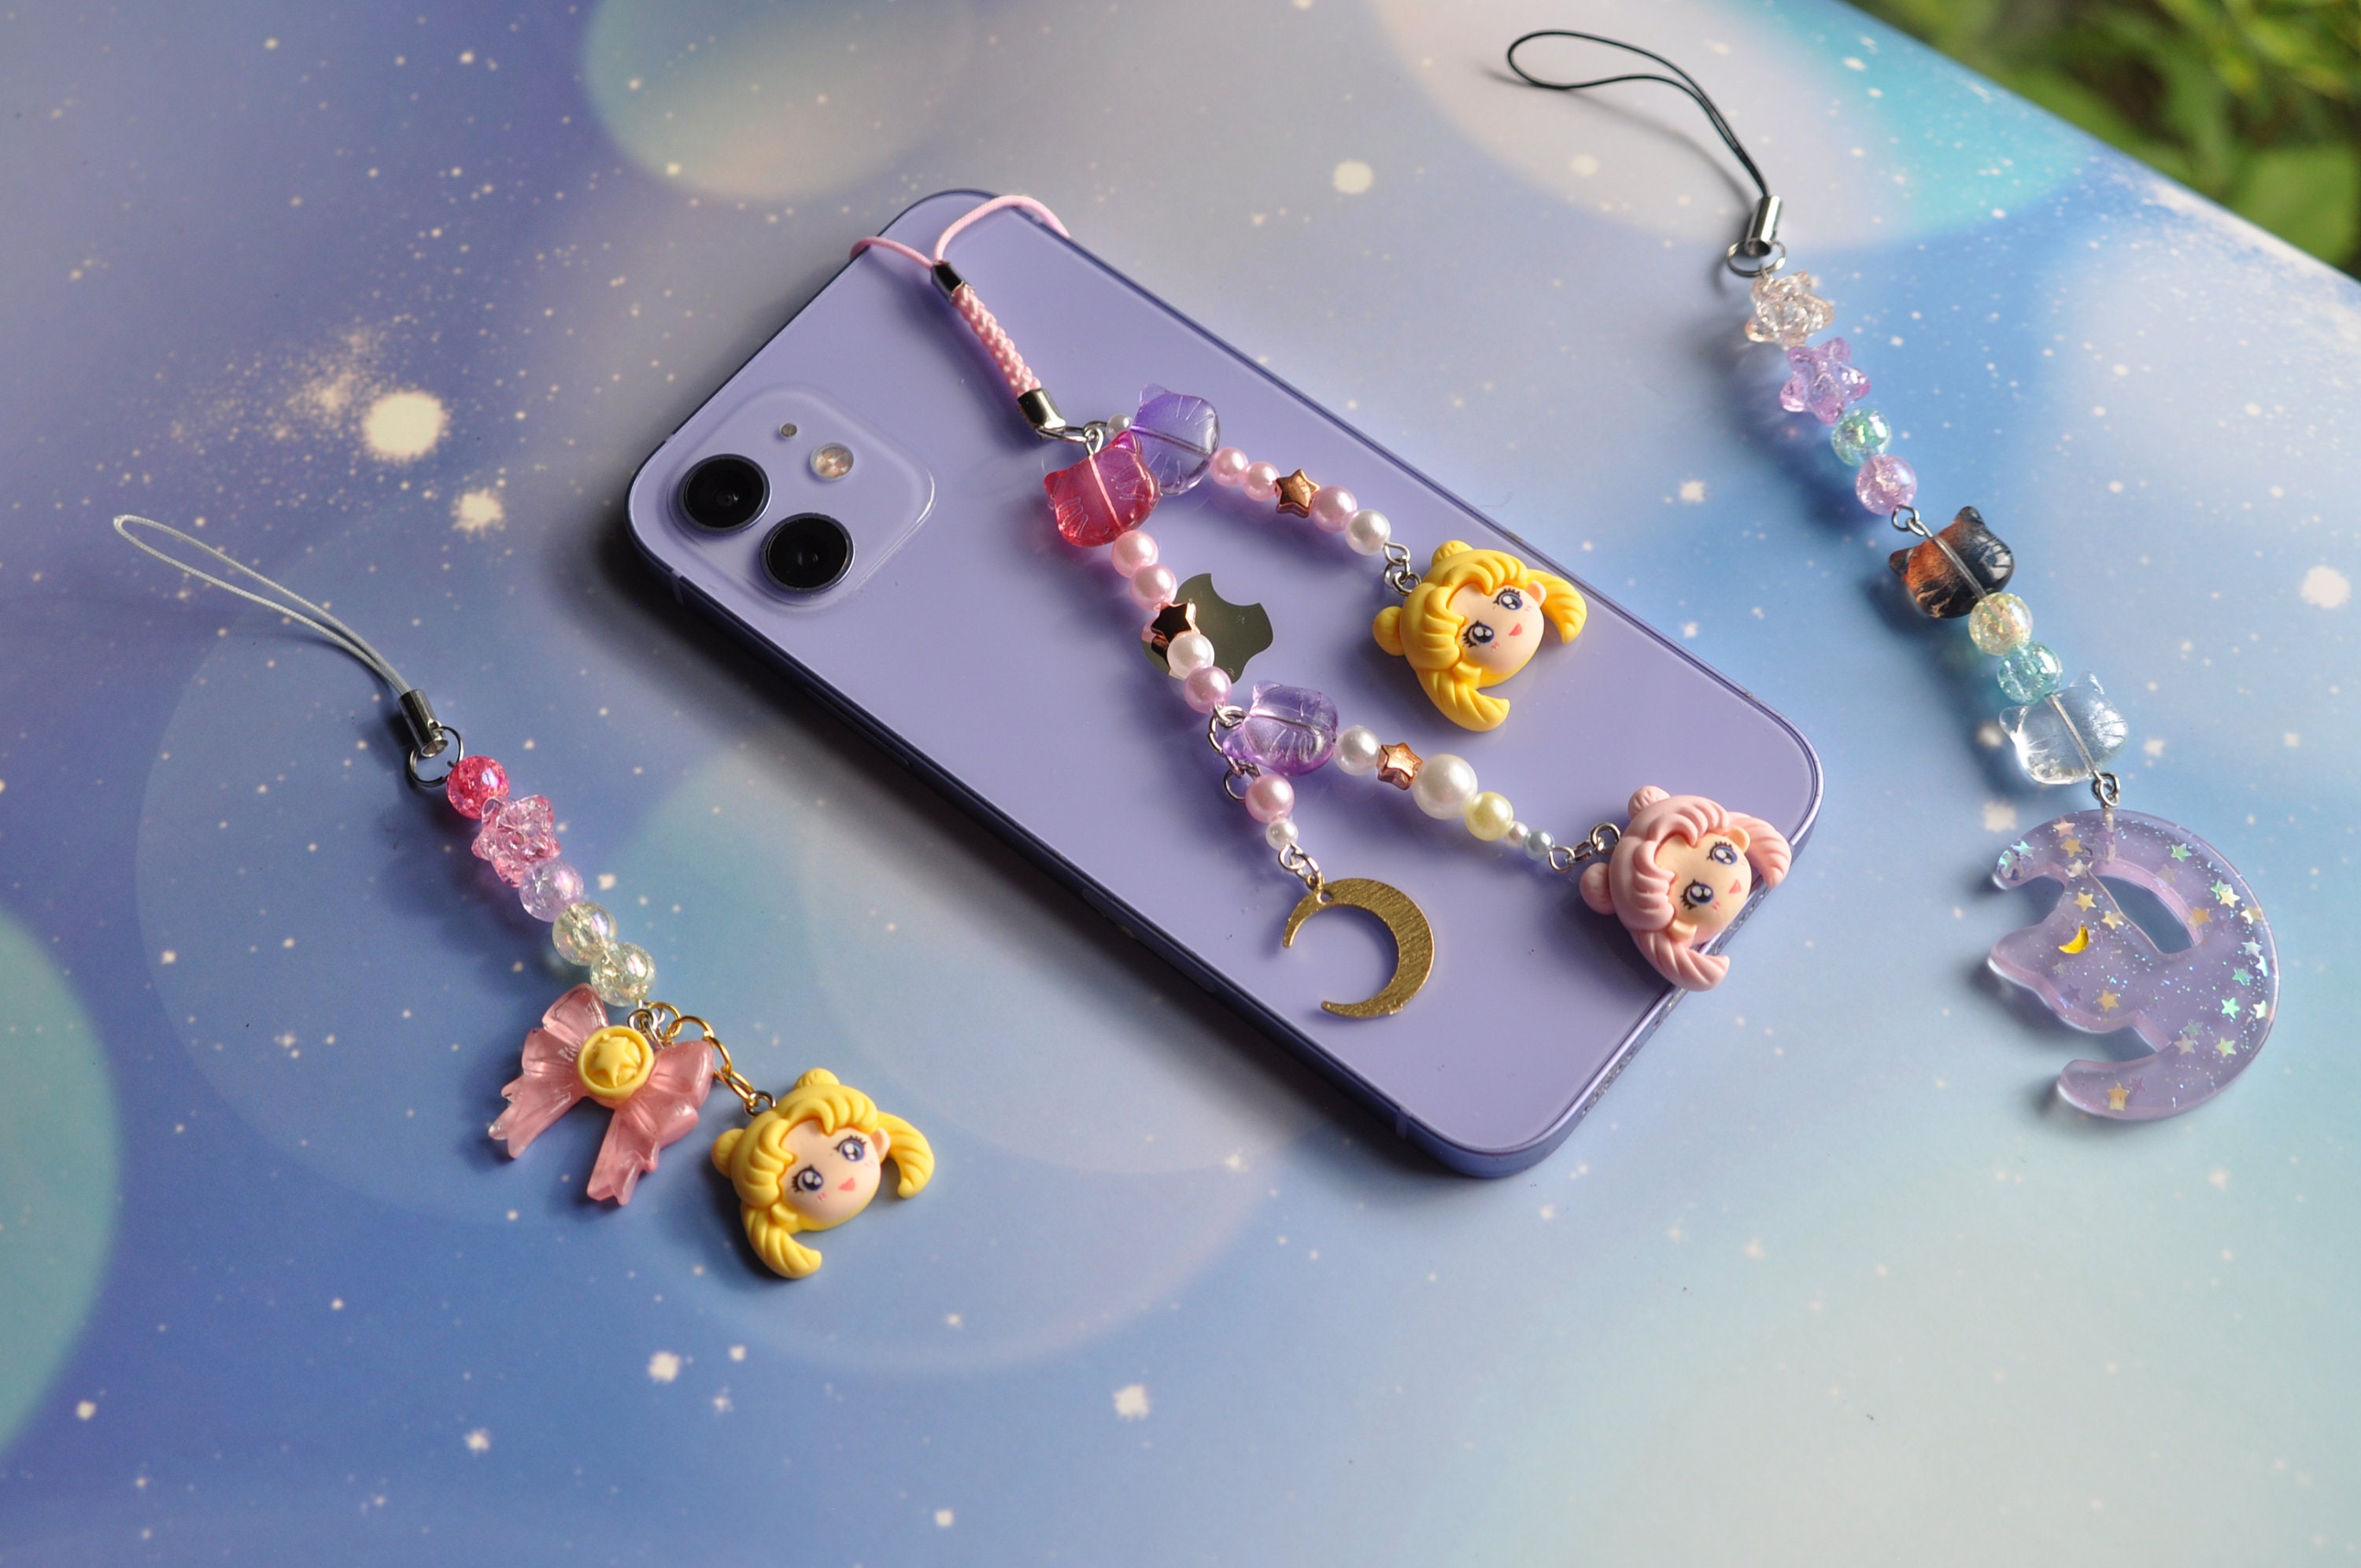 cutest phone charm from daiso 💖 gives sailor moon vibes! #daiso #dais